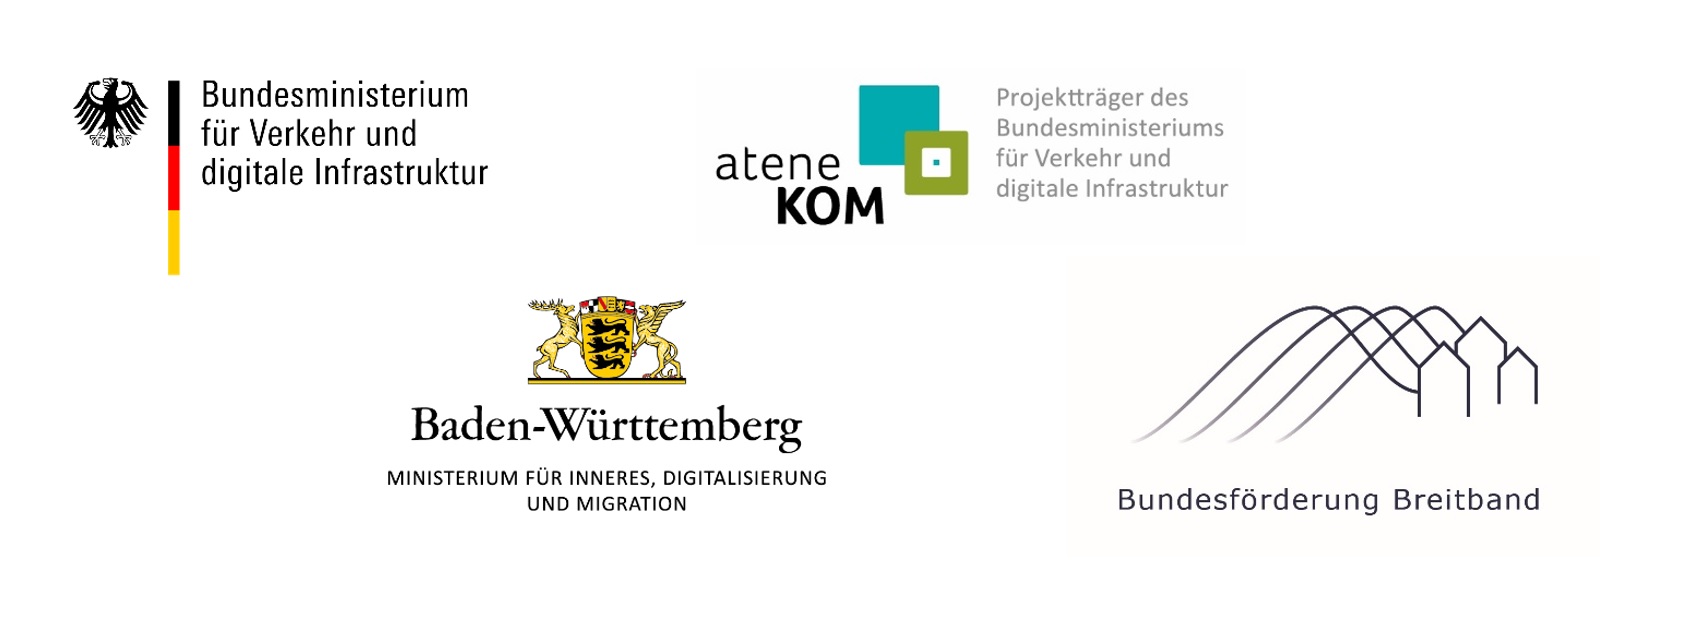  Logo-Verbund Bundesministerium-Verkehr-digitale-Infrastruktur_BW-Inneres-Digitalisierung-Migration_Atene-KOM_Bundesfoerderung-Breitband 